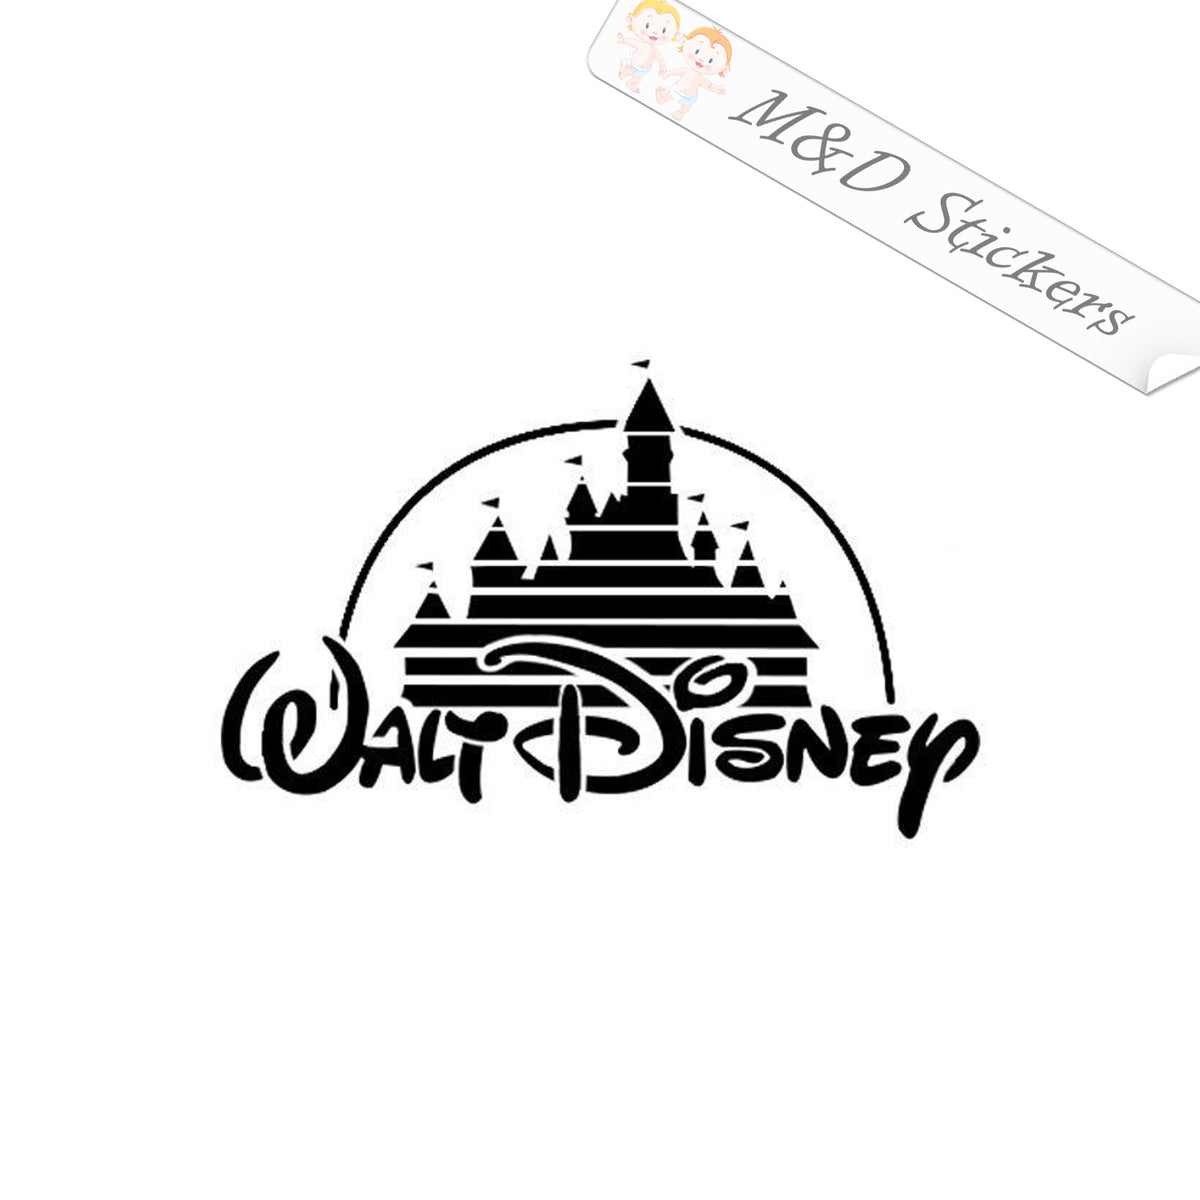 Disney Castle Decal Disney Decal Disney Castle Sticker Disney Castle Vinyl  Decal Disney Vinyl Decals 